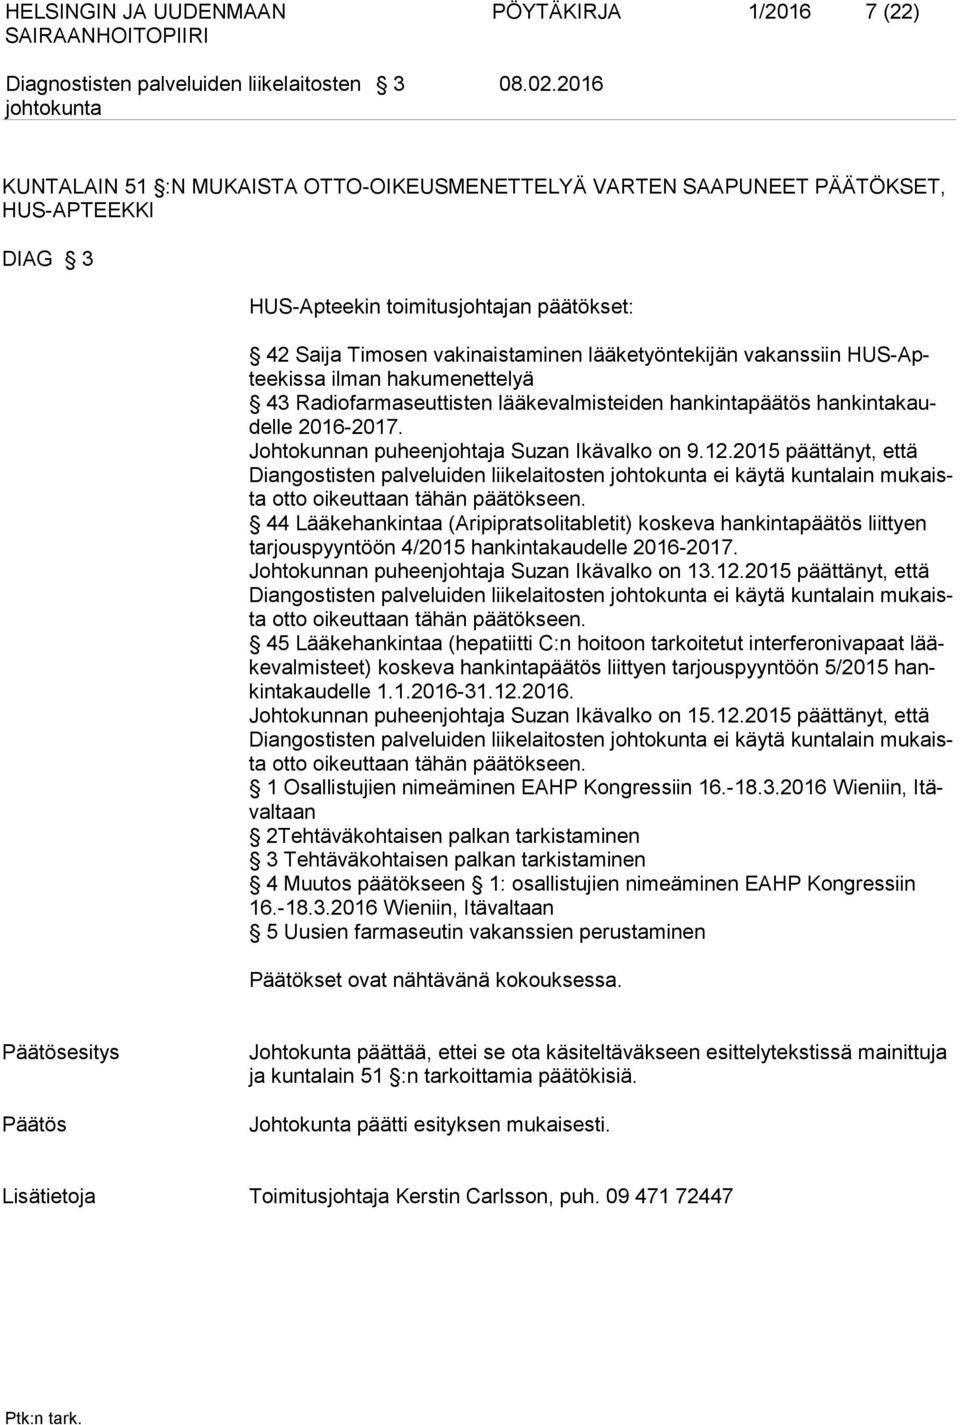 vakanssiin HUS-Apteekissa ilman hakumenettelyä 43 Radiofarmaseuttisten lääkevalmisteiden hankintapäätös hankintakaudelle 2016-2017. Johtokunnan puheenjohtaja Suzan Ikävalko on 9.12.